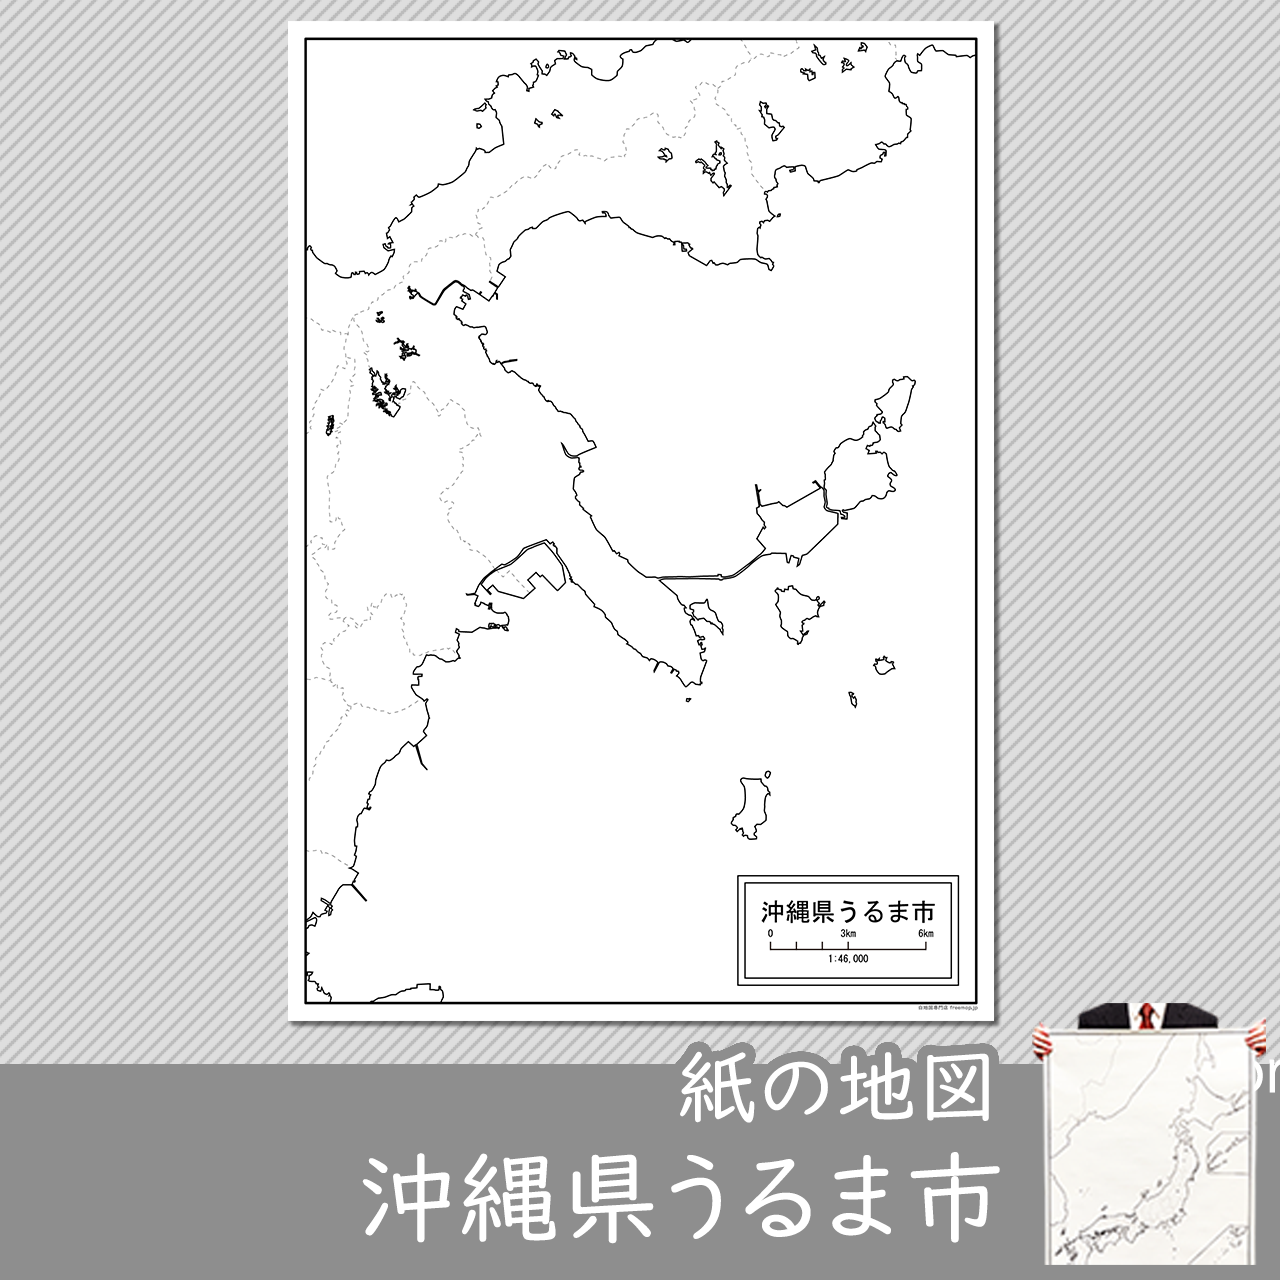 うるま市の紙の白地図